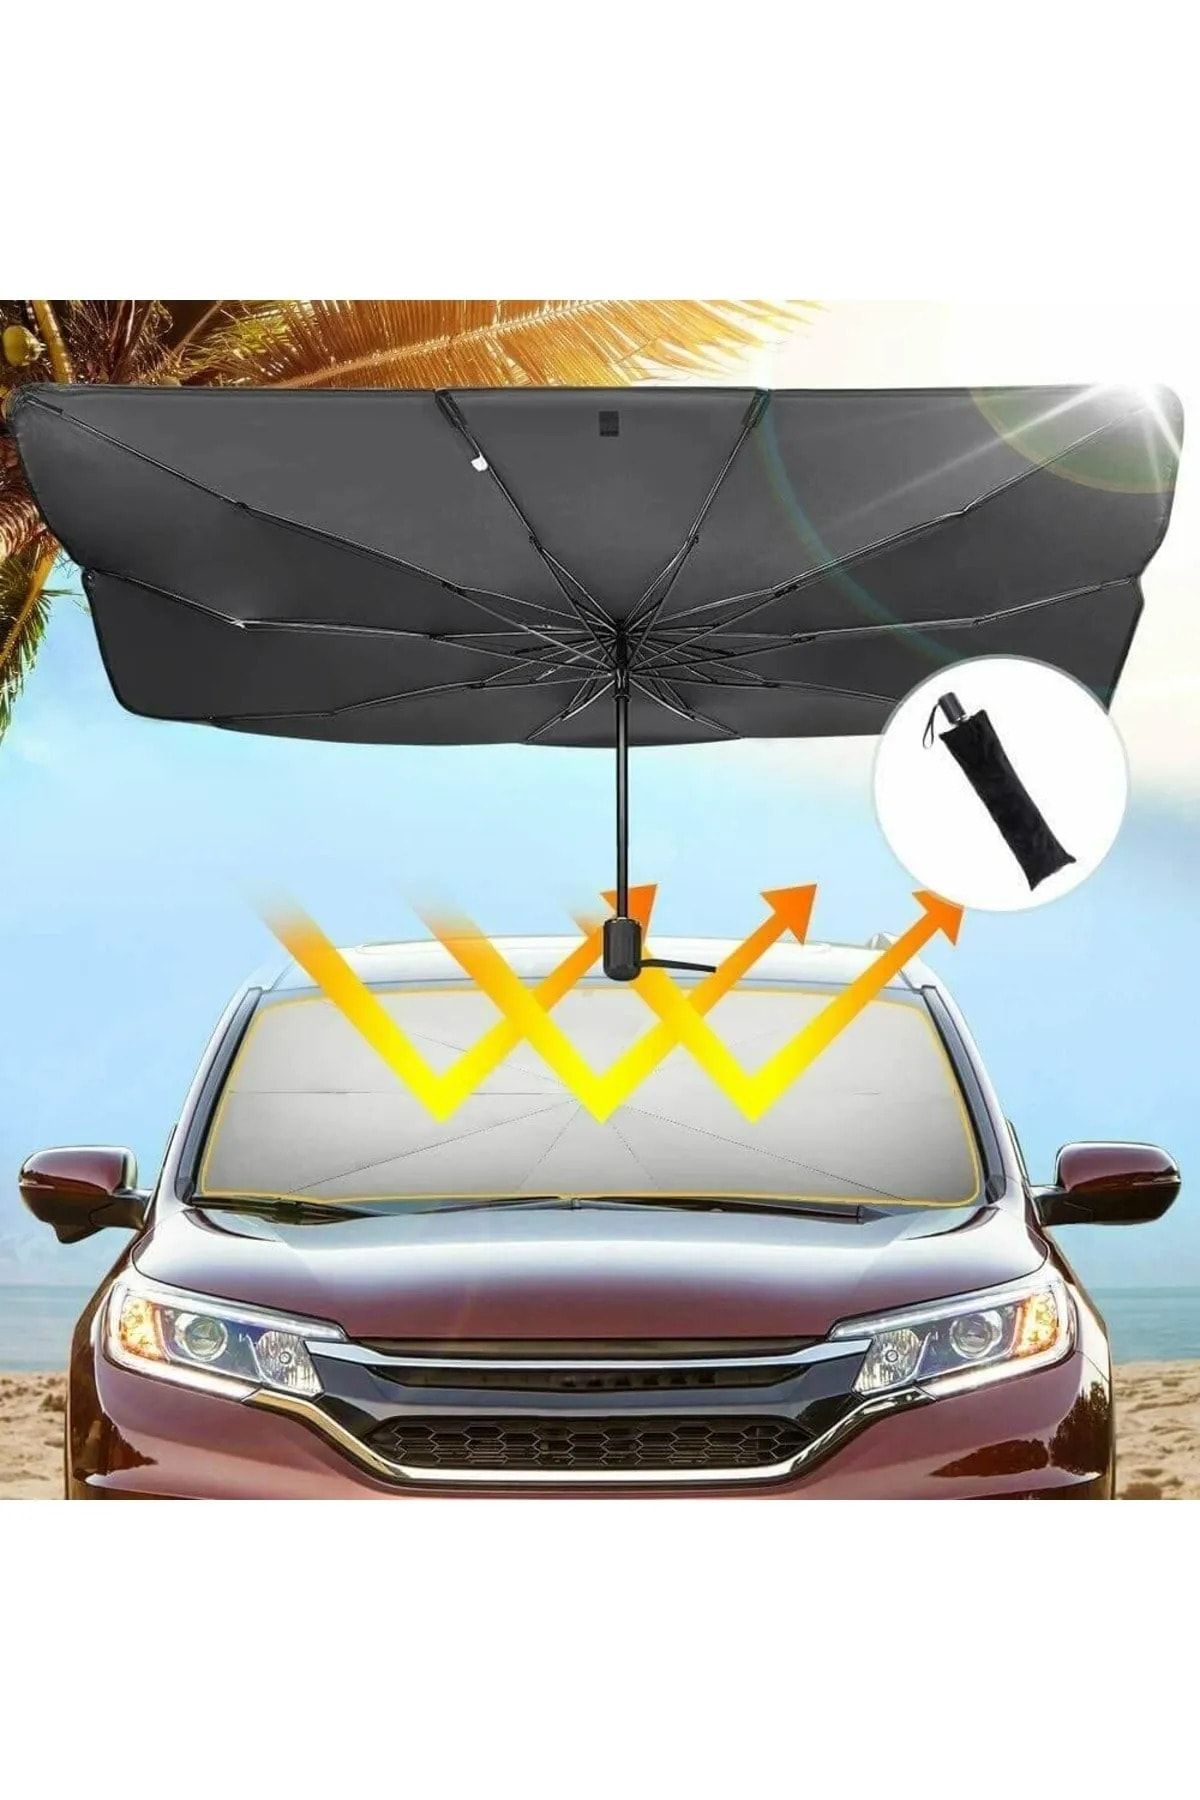 Universal Bmw 3.20 Araba Ön Cam Güneşlik Katlanabilir Güneşlik Şemsiye Ön Cam Gölgelik